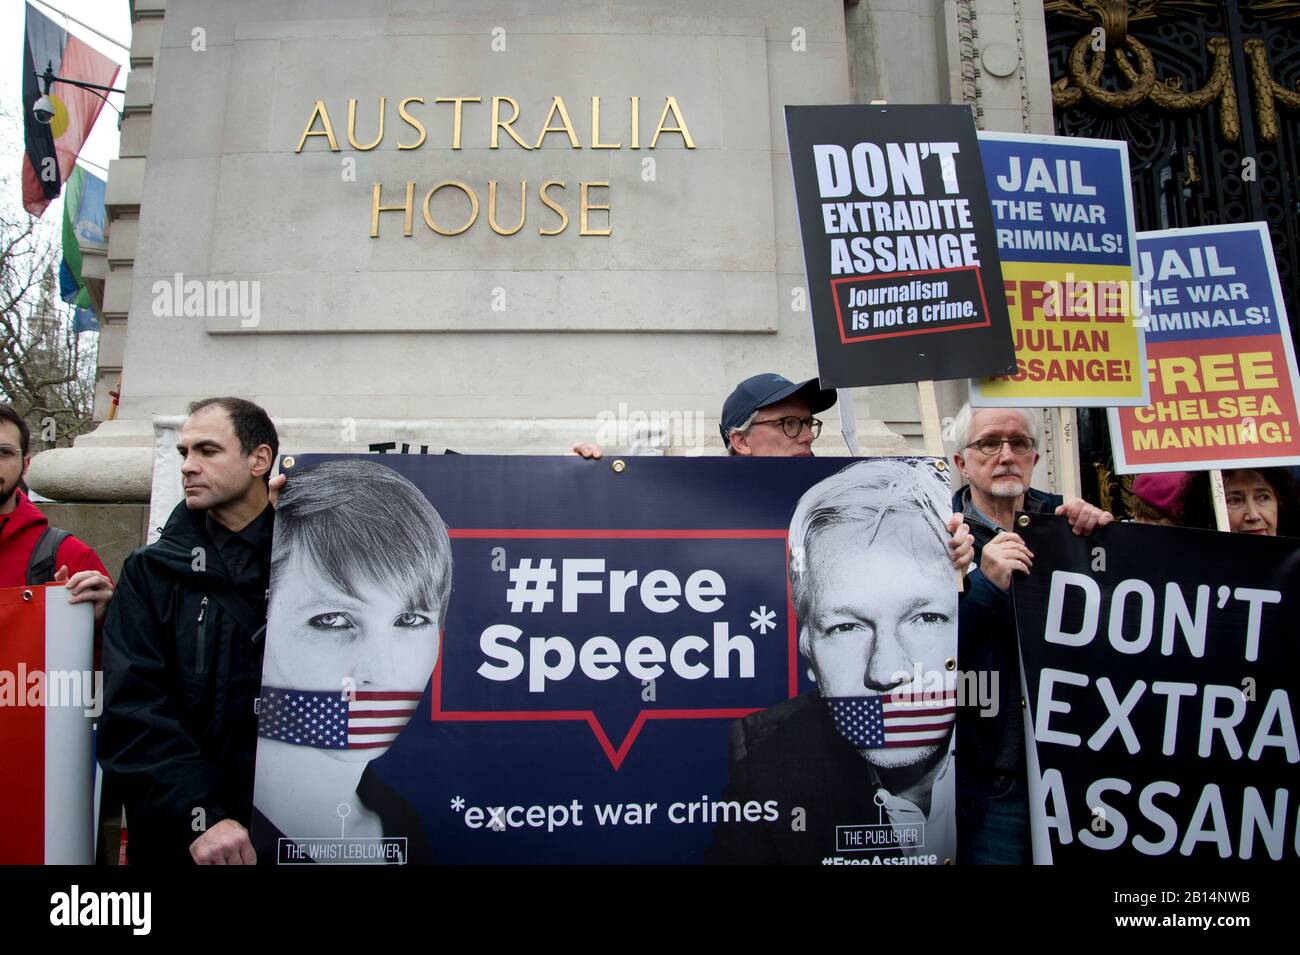 Londres 22 de febrero de 2020. Manifestación frente a la Embajada de Australia para oponerse a la extradición a los Estados Unidos de Julian Assange, que se encuentra en la prisión de Belmarsh Foto de stock